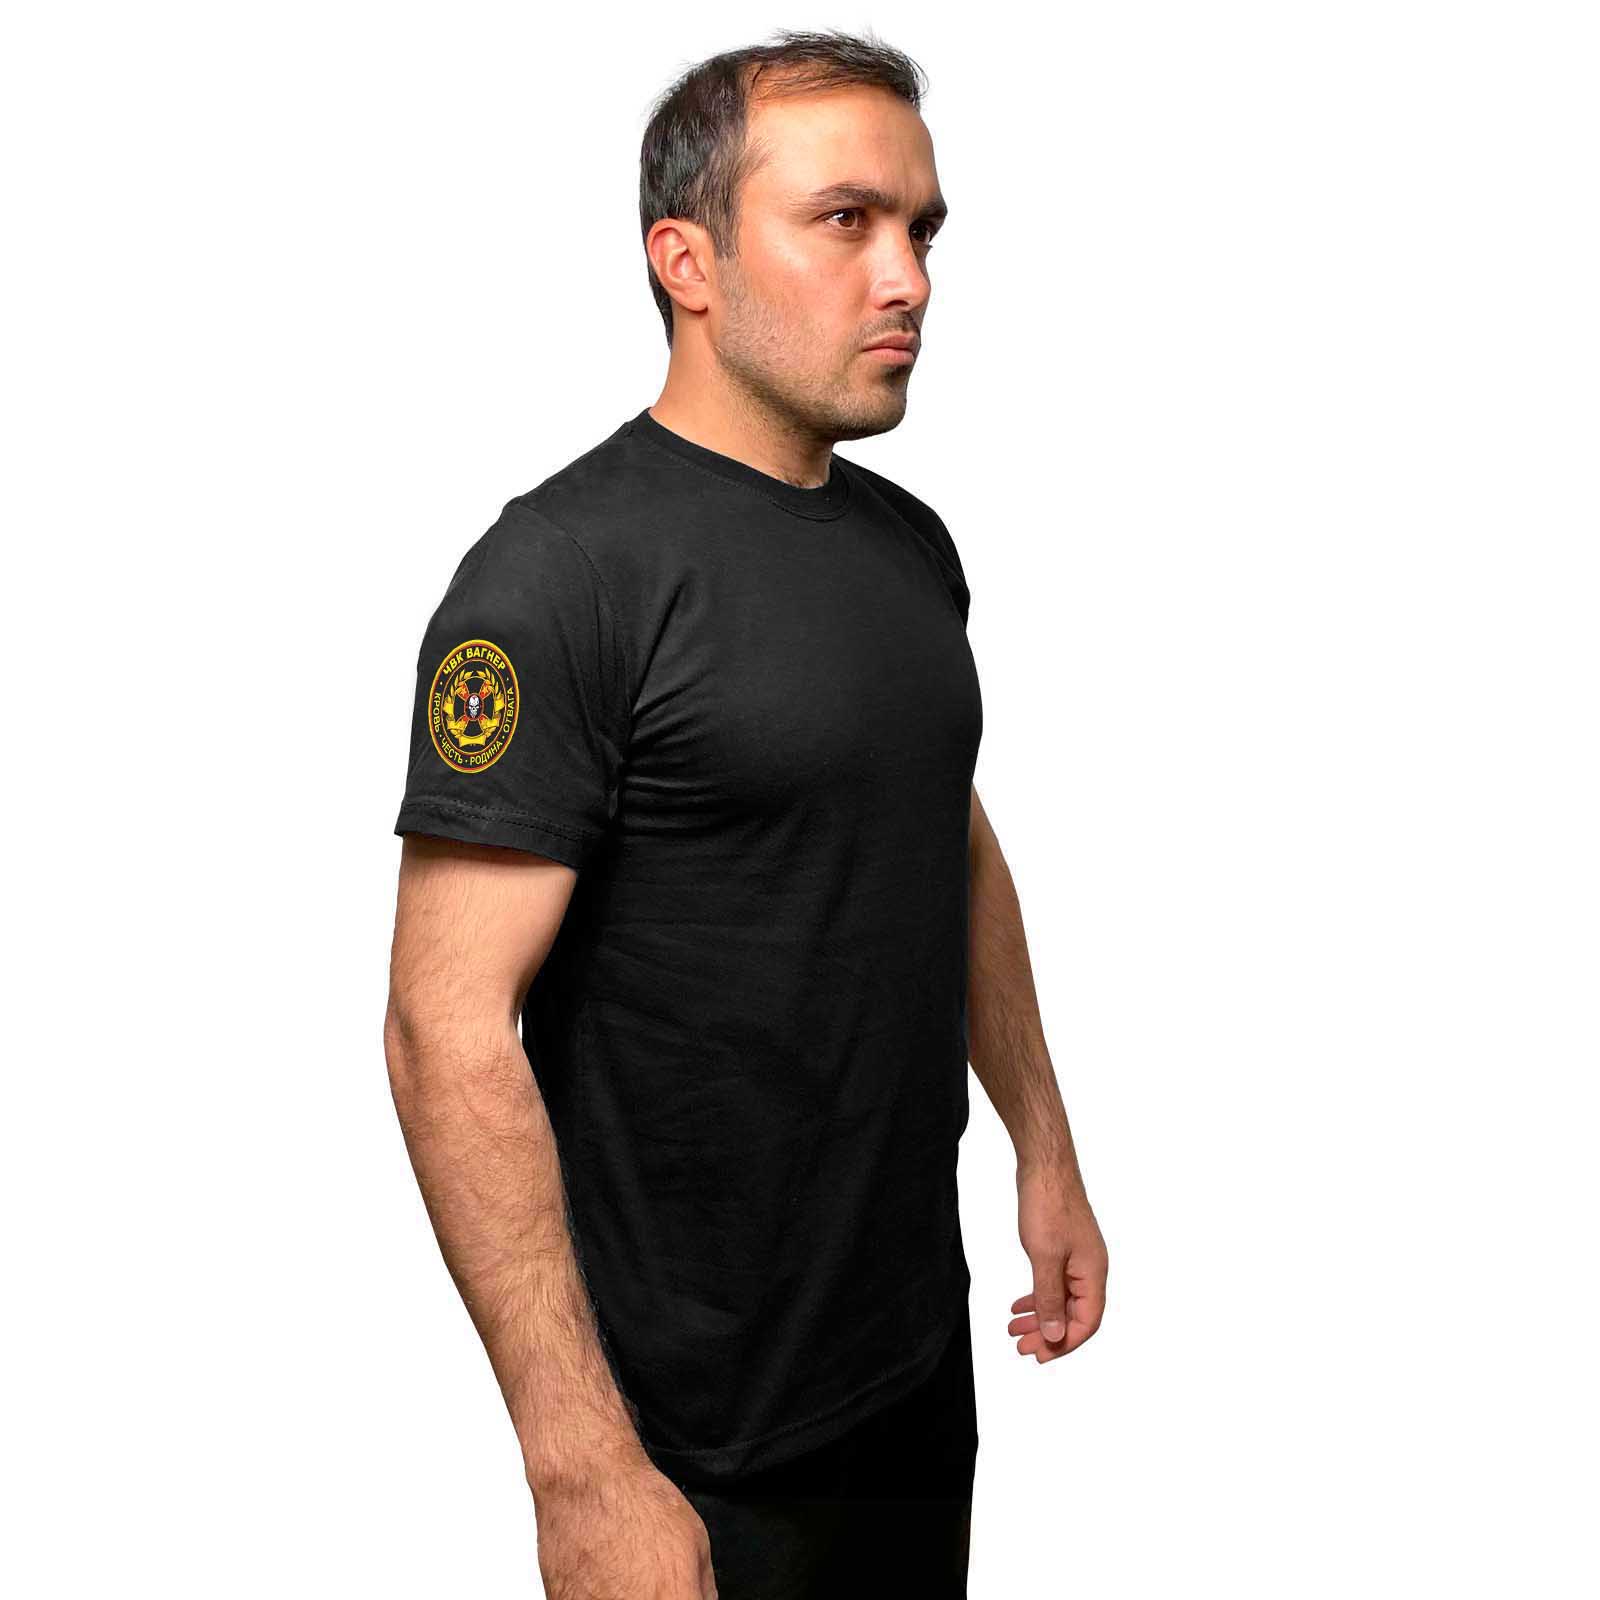 Купить надежную мужскую футболку с термотрансфером ЧВК Вагнер онлайн